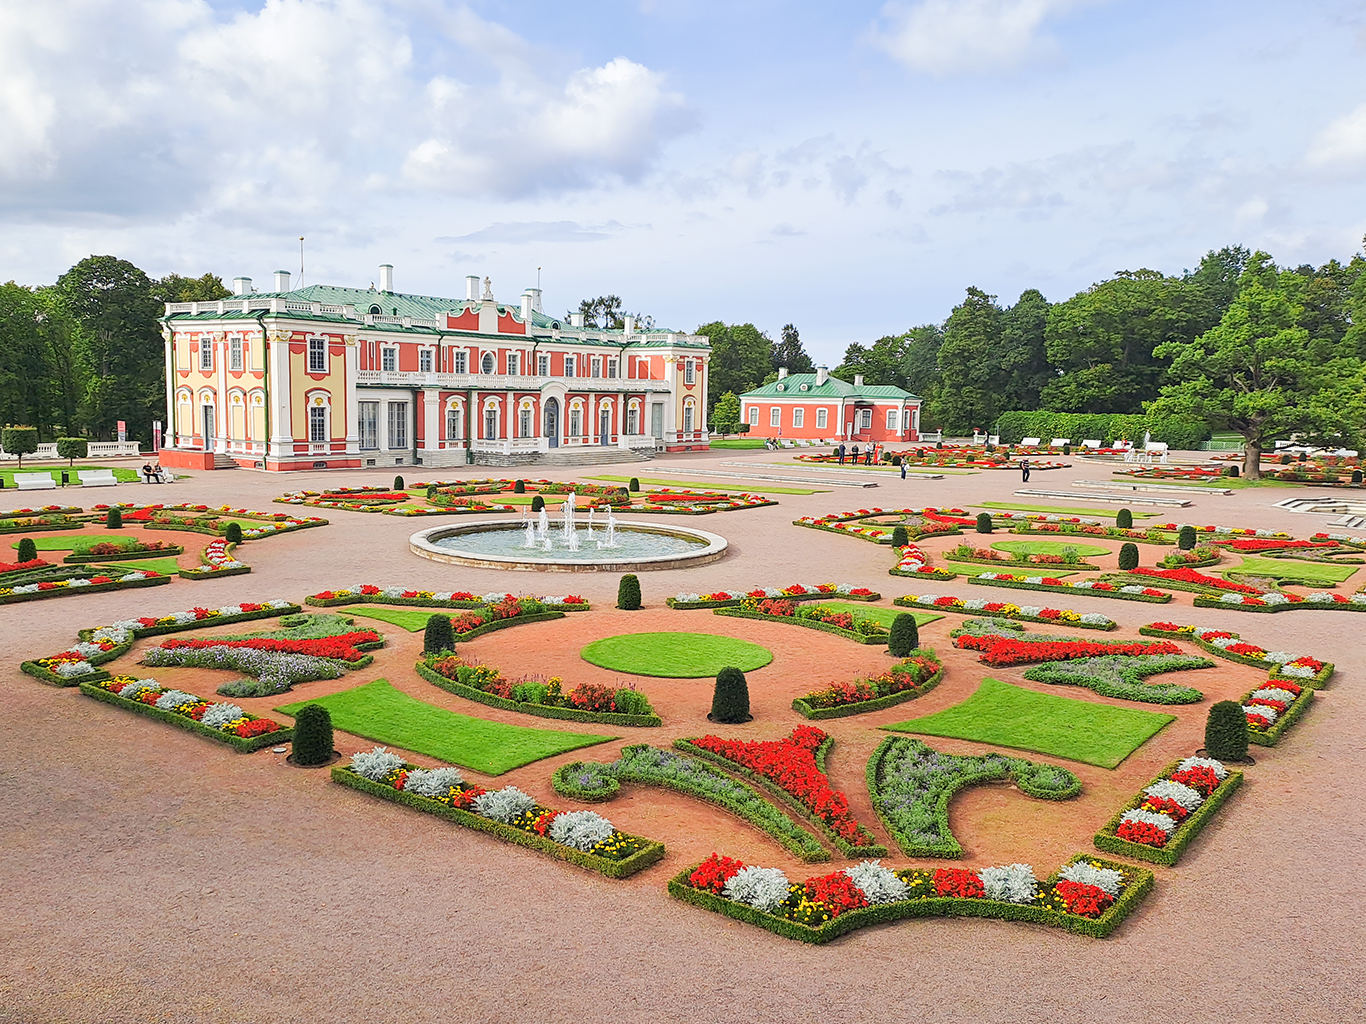 Barokní palác Kadriorg s květinovou zahradou nechal postavit car Petr Veliký